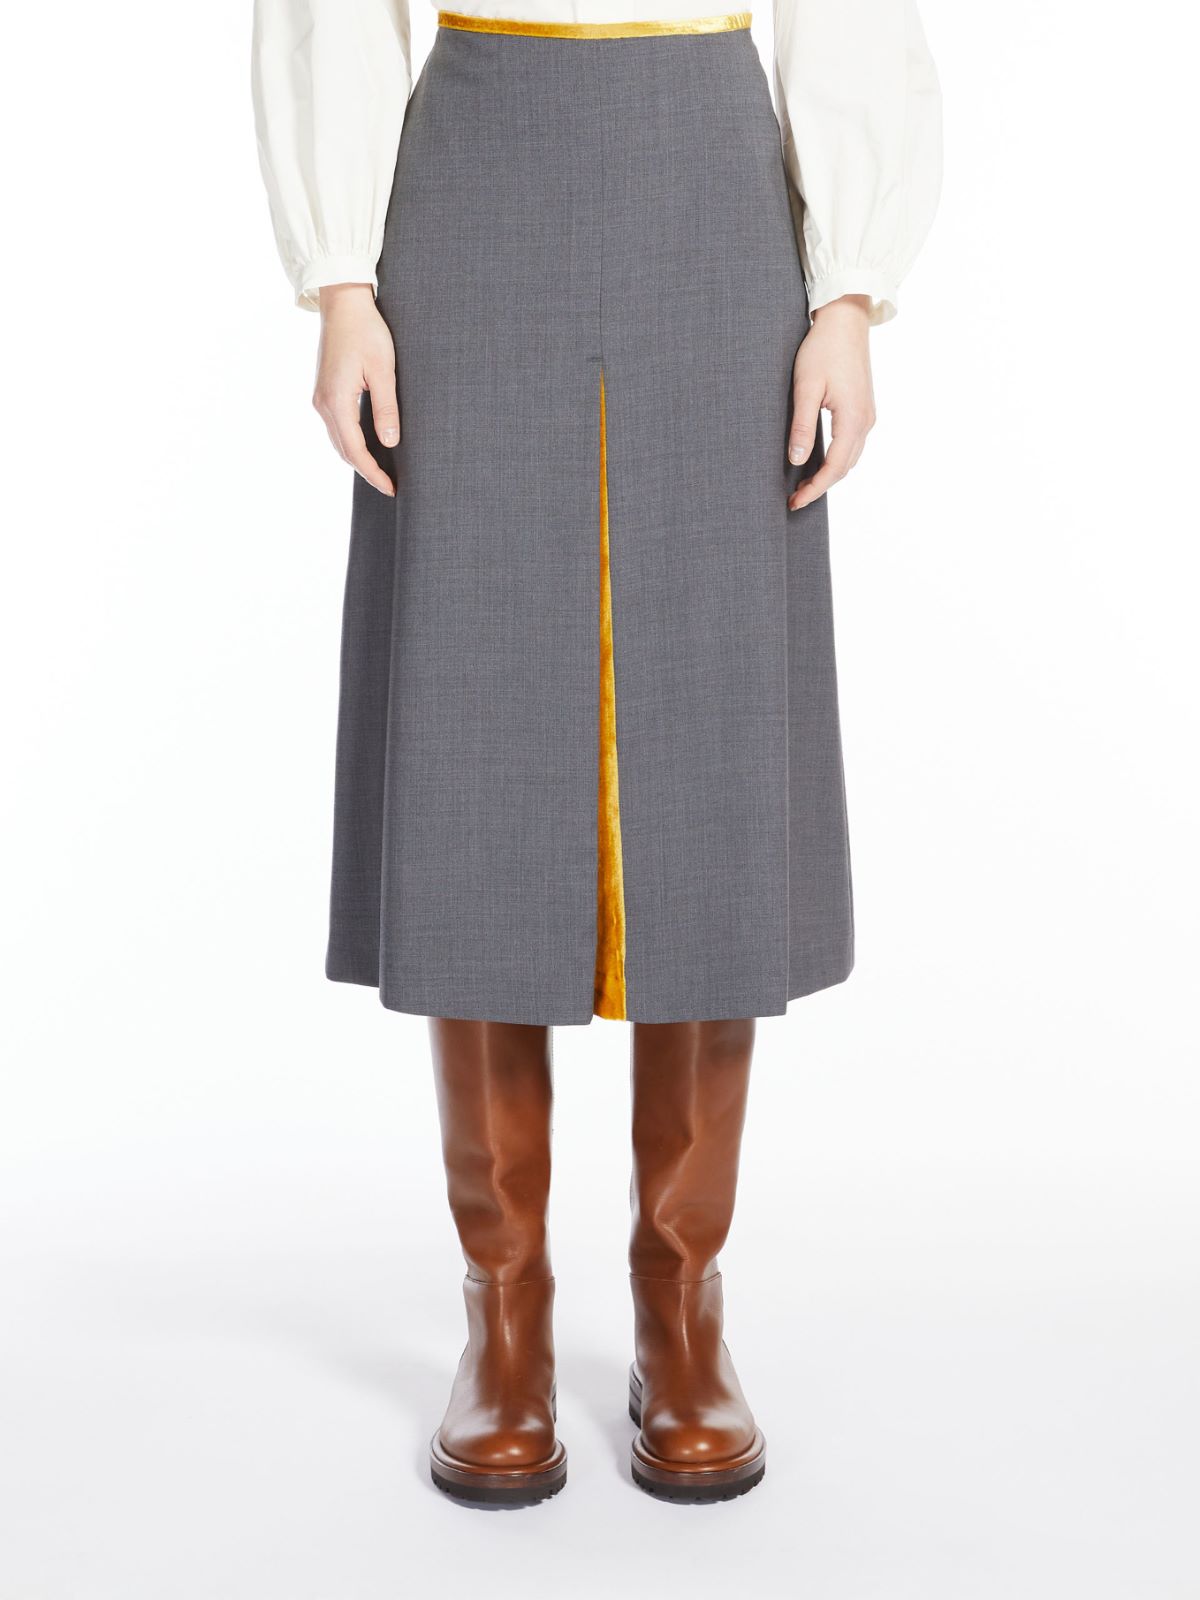 Wool skirt - MEDIUM GREY - Weekend Max Mara - 2